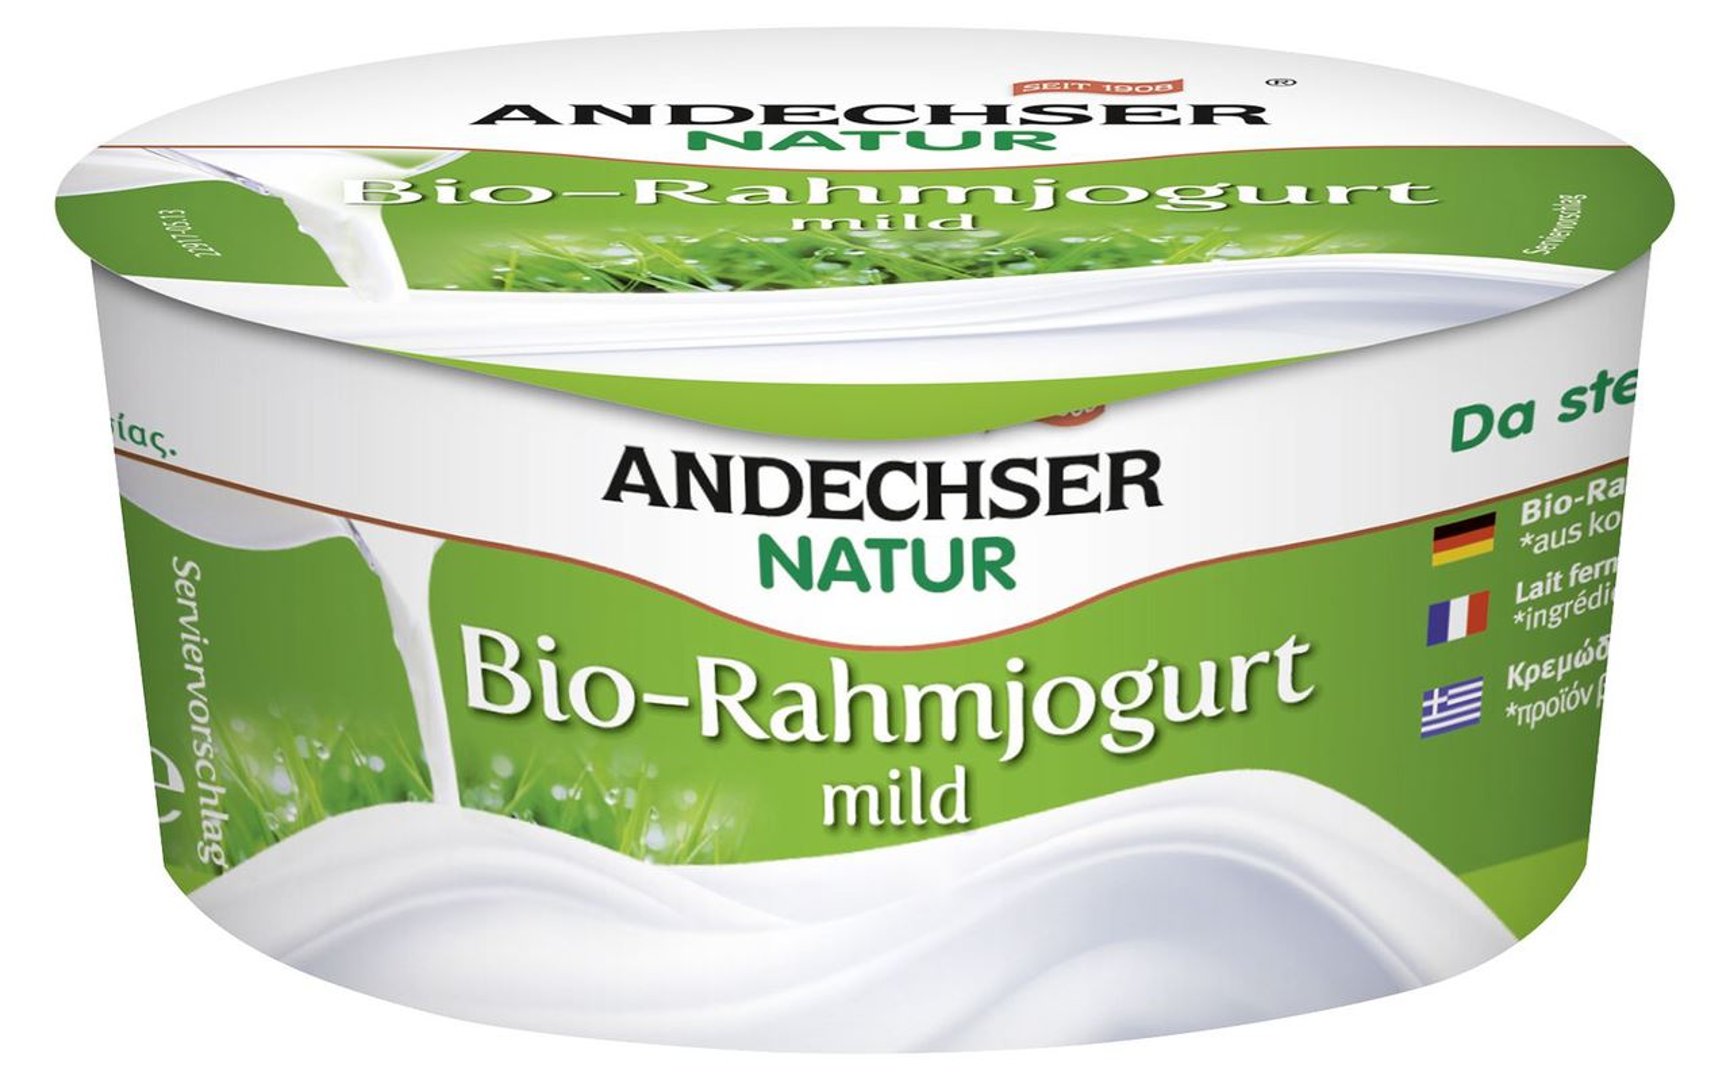 Andechser - Natur Rahmjoghurt mild 10 % Fett - 150 g Becher